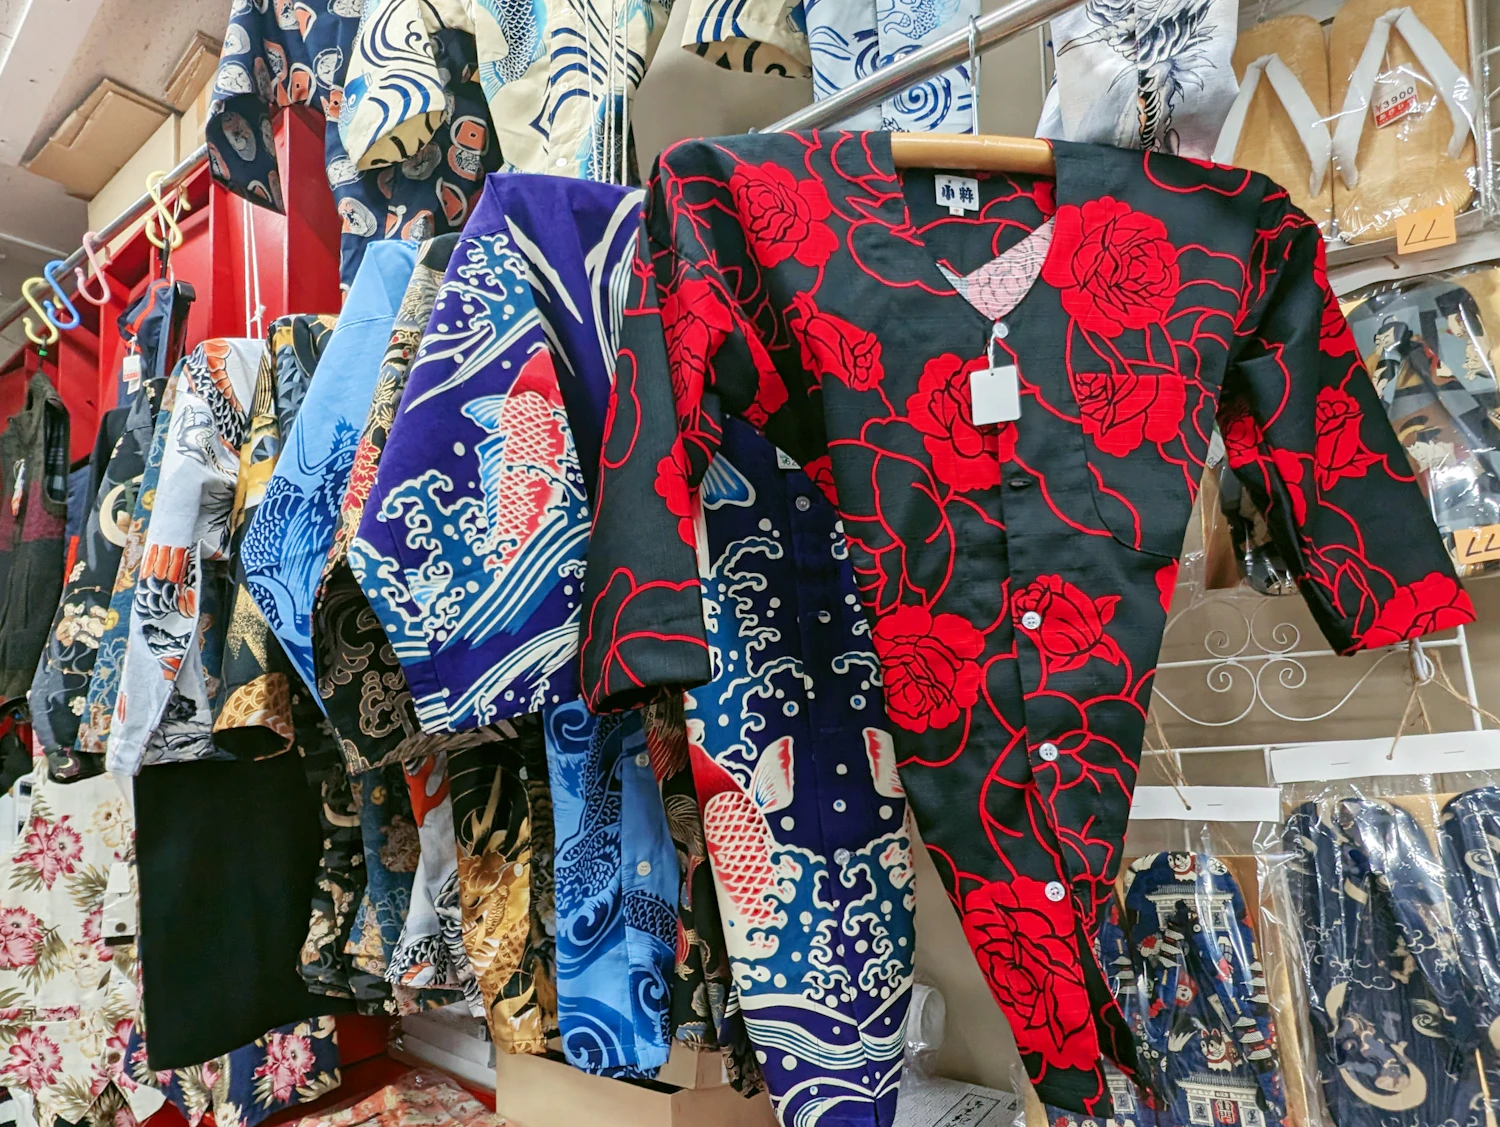 木更津から�発信する、ヤンキーファッションの軌跡とファンクな魅力